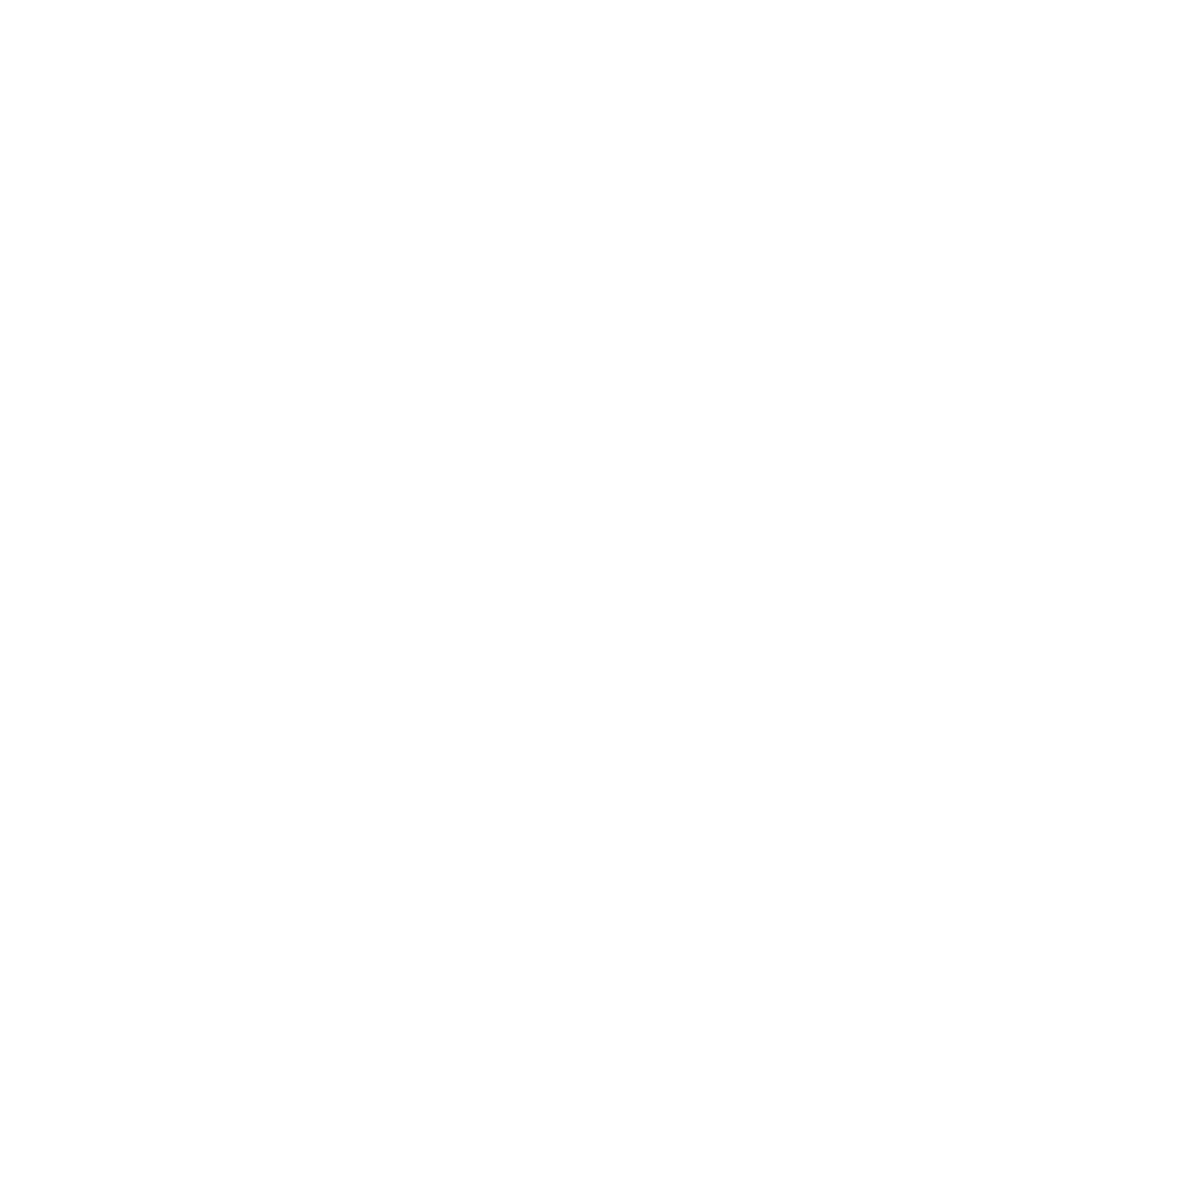 logo promotora El Bosque portada